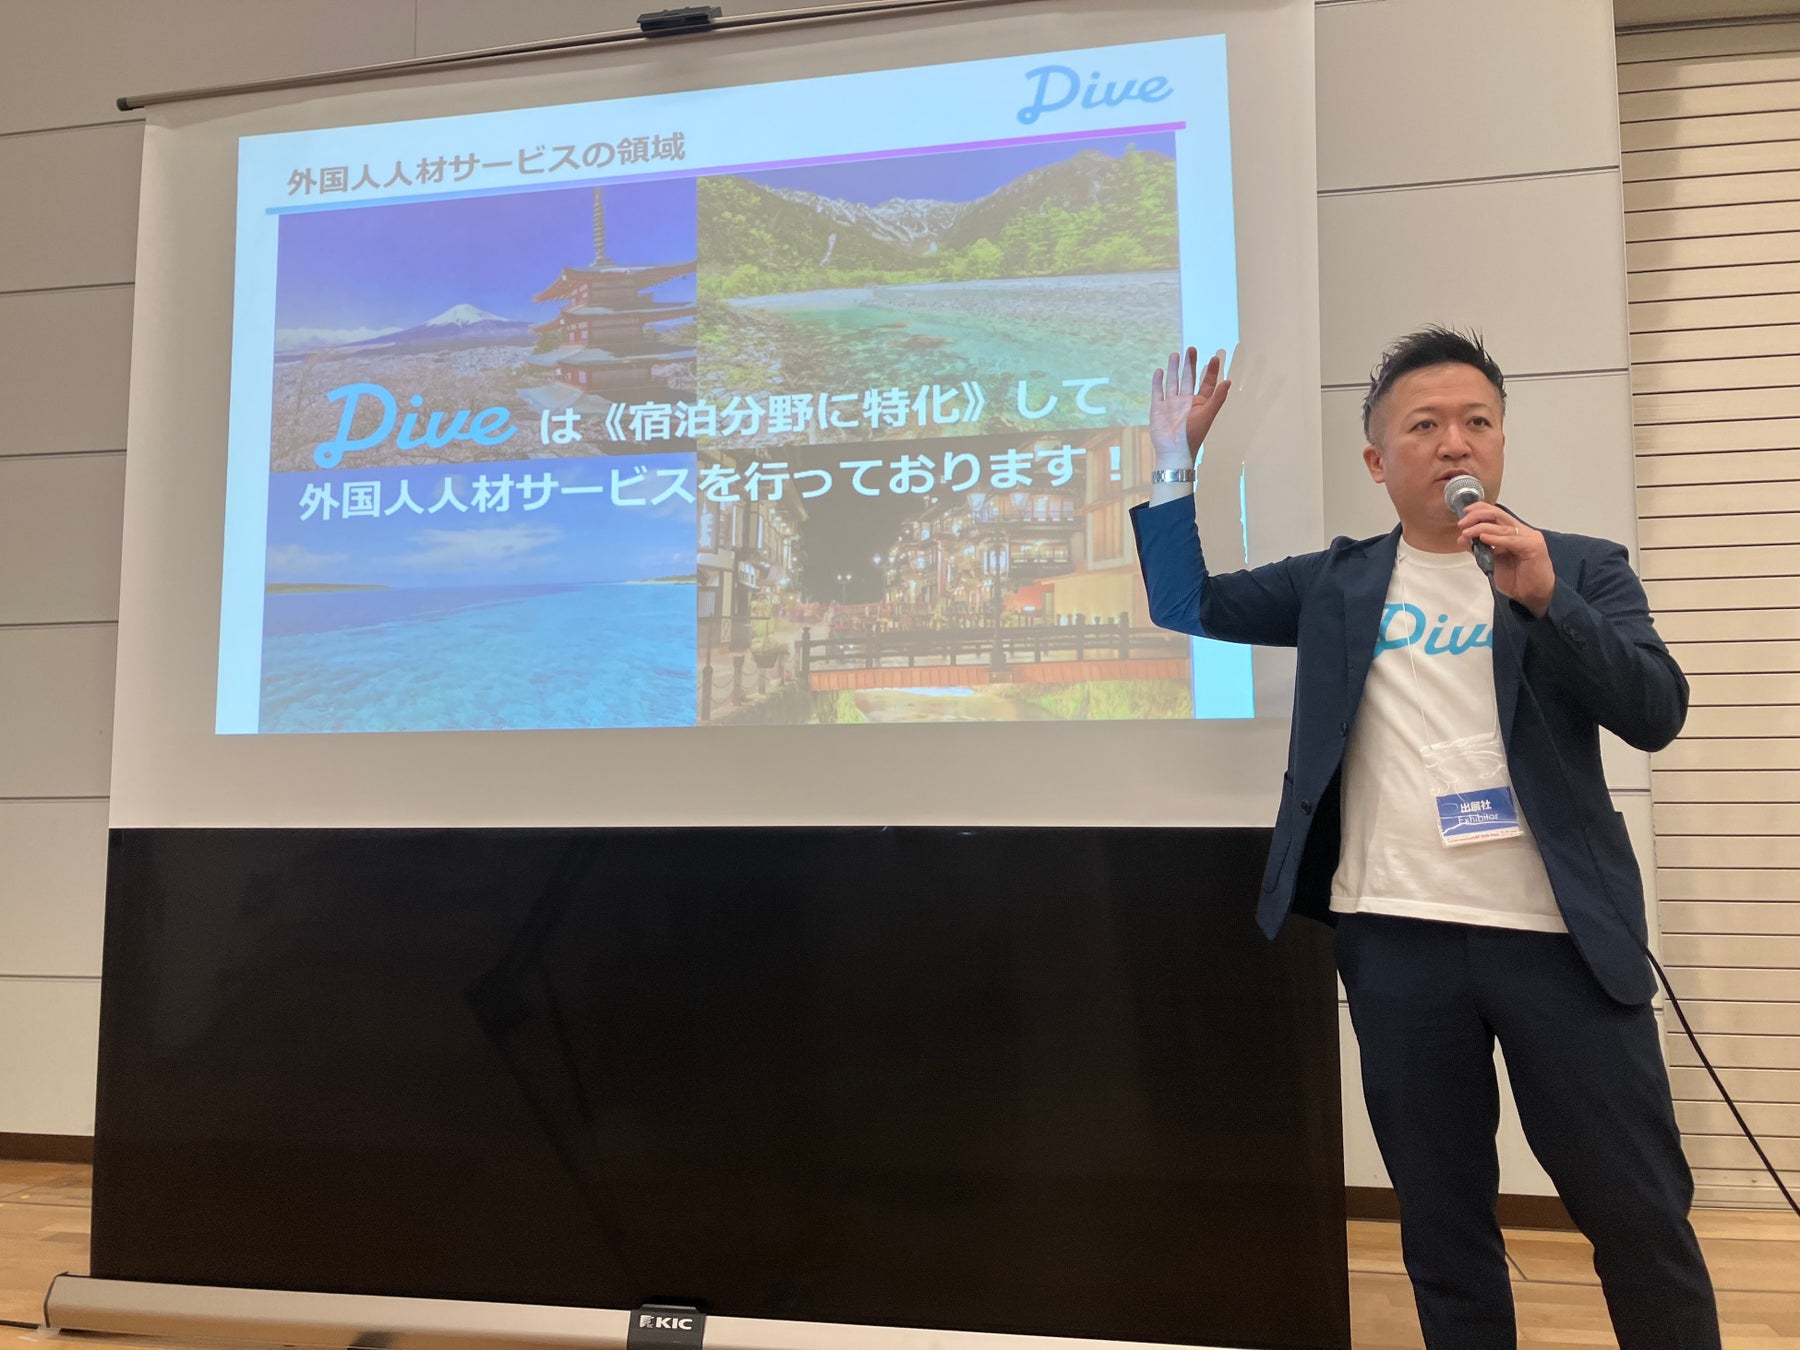 日本で転職活動をする外国籍人材や、日本での就職先を検討する外国人留学生を対象とした「第2回インターナショナルジョブフェア東京2022」にダイブ菅沼が登壇